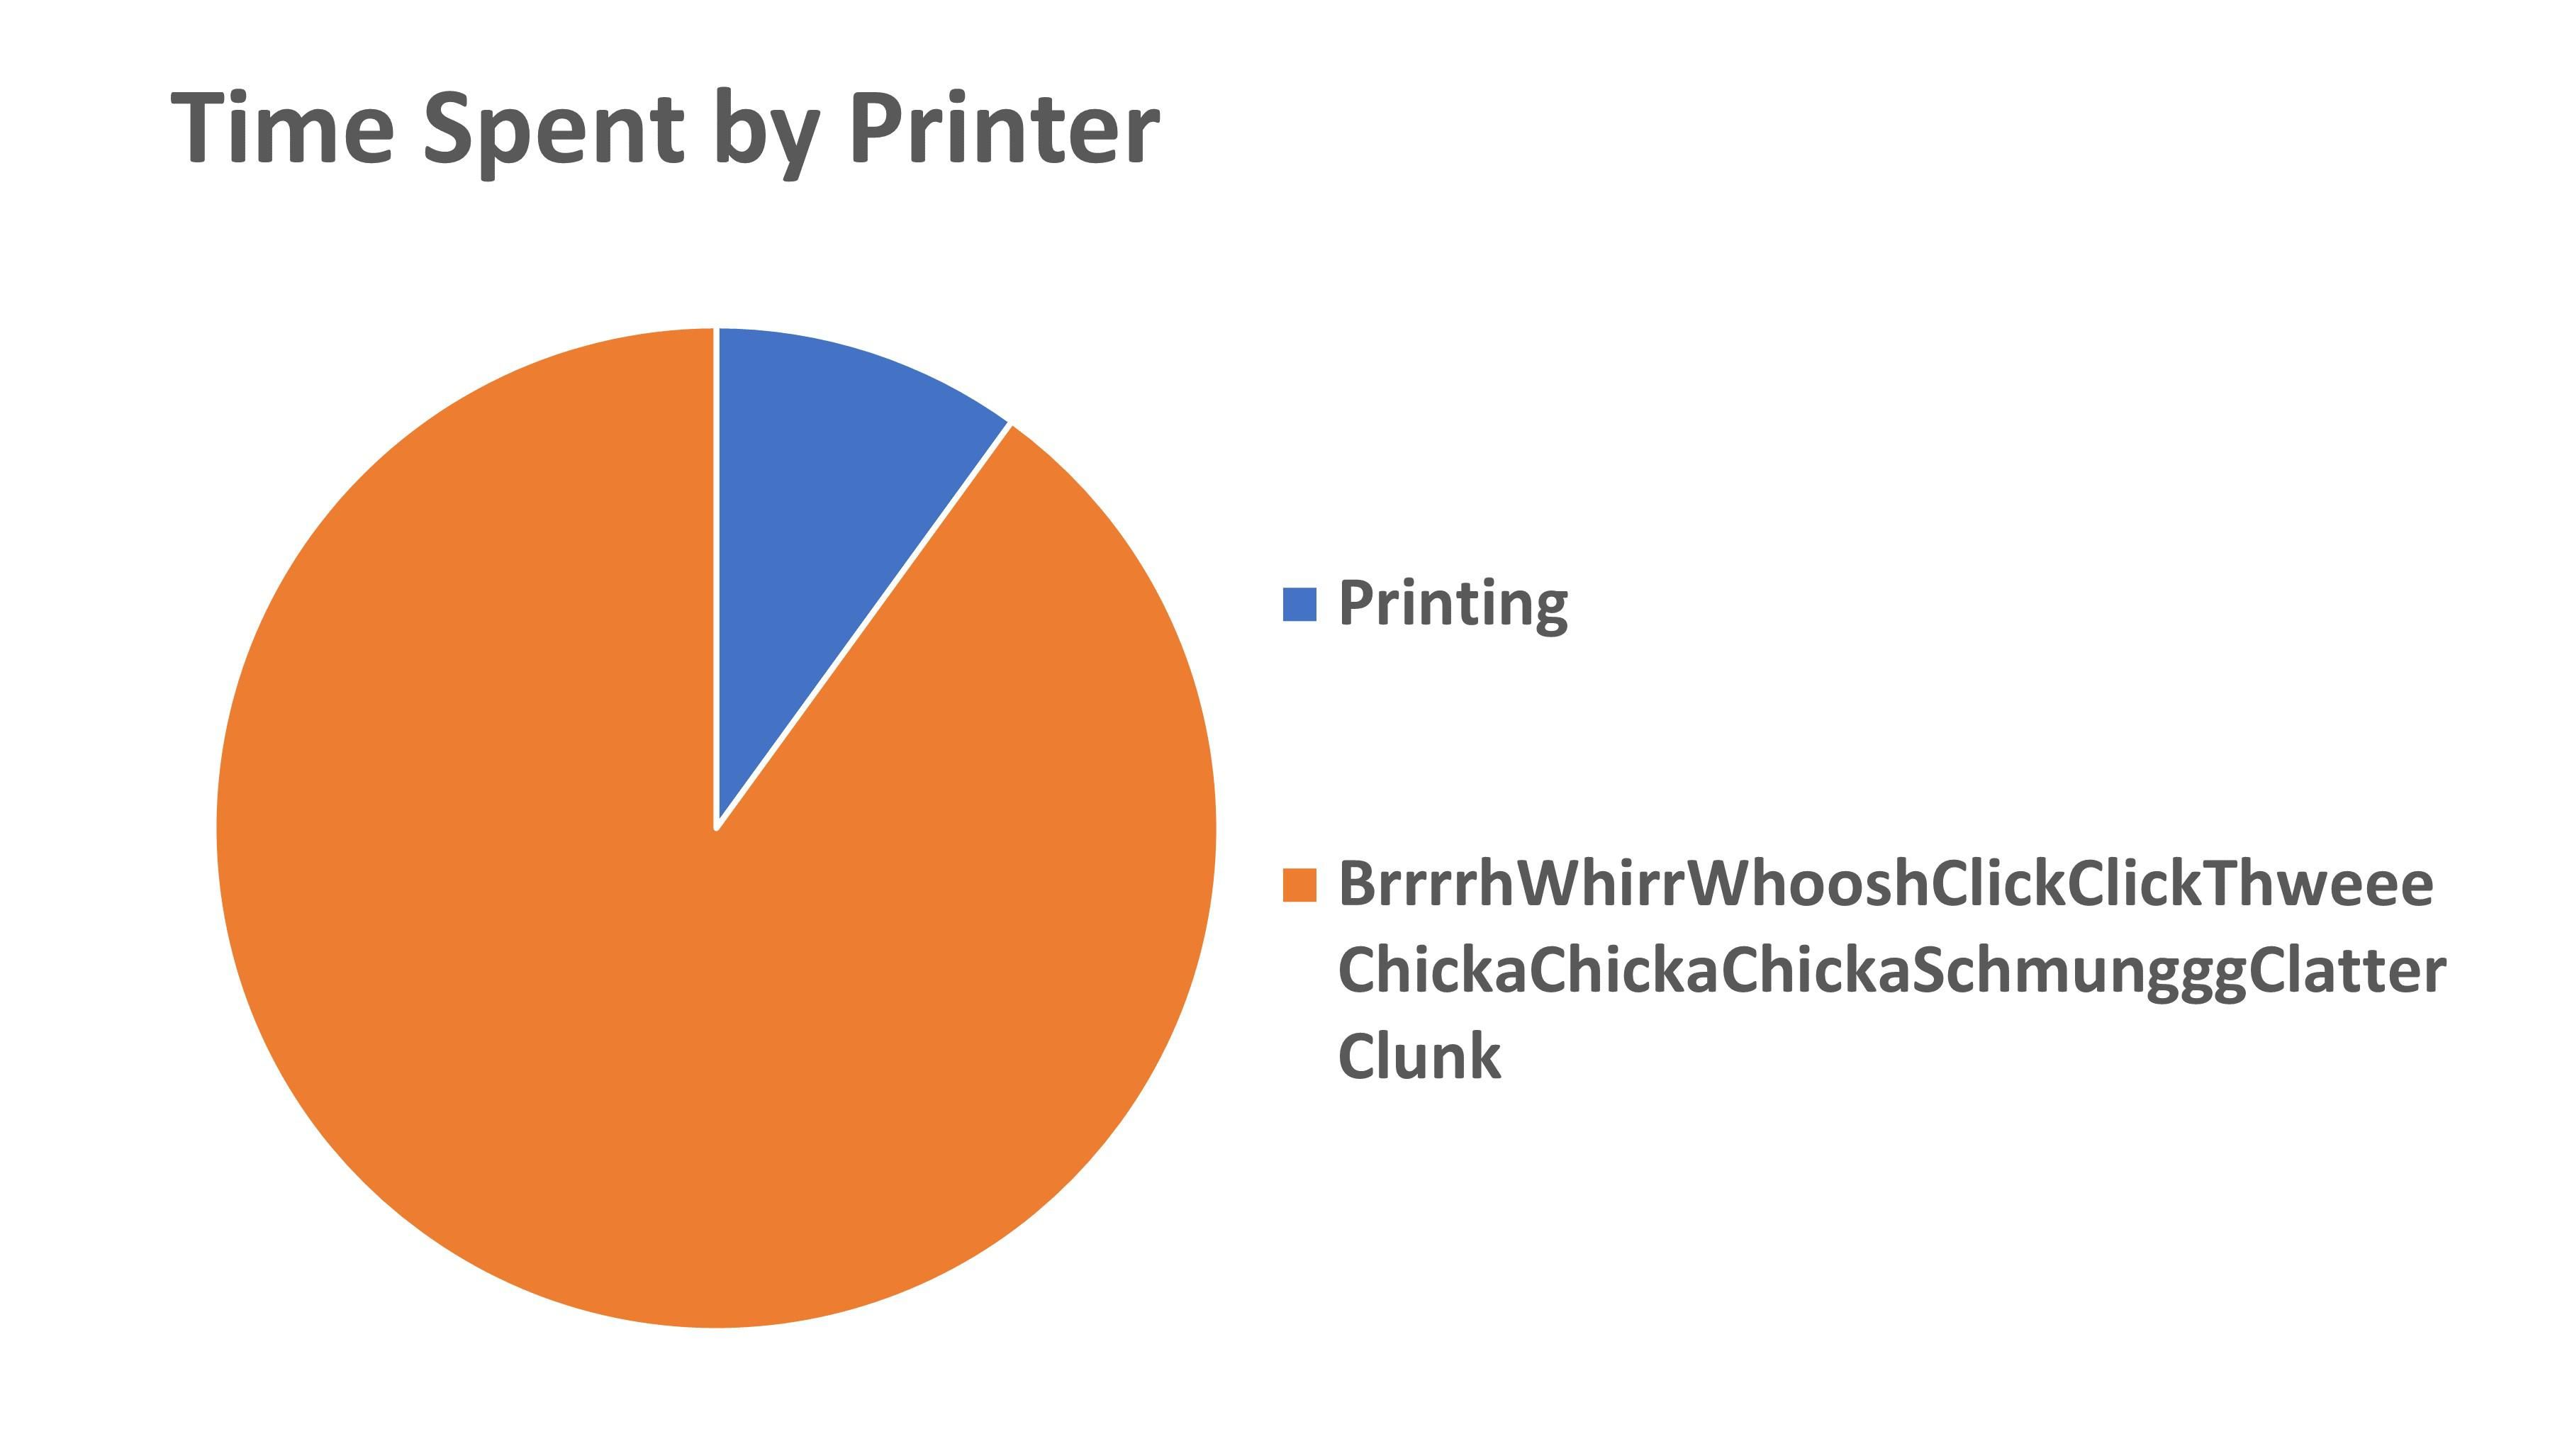 Every Inkjet printer I've ever used.